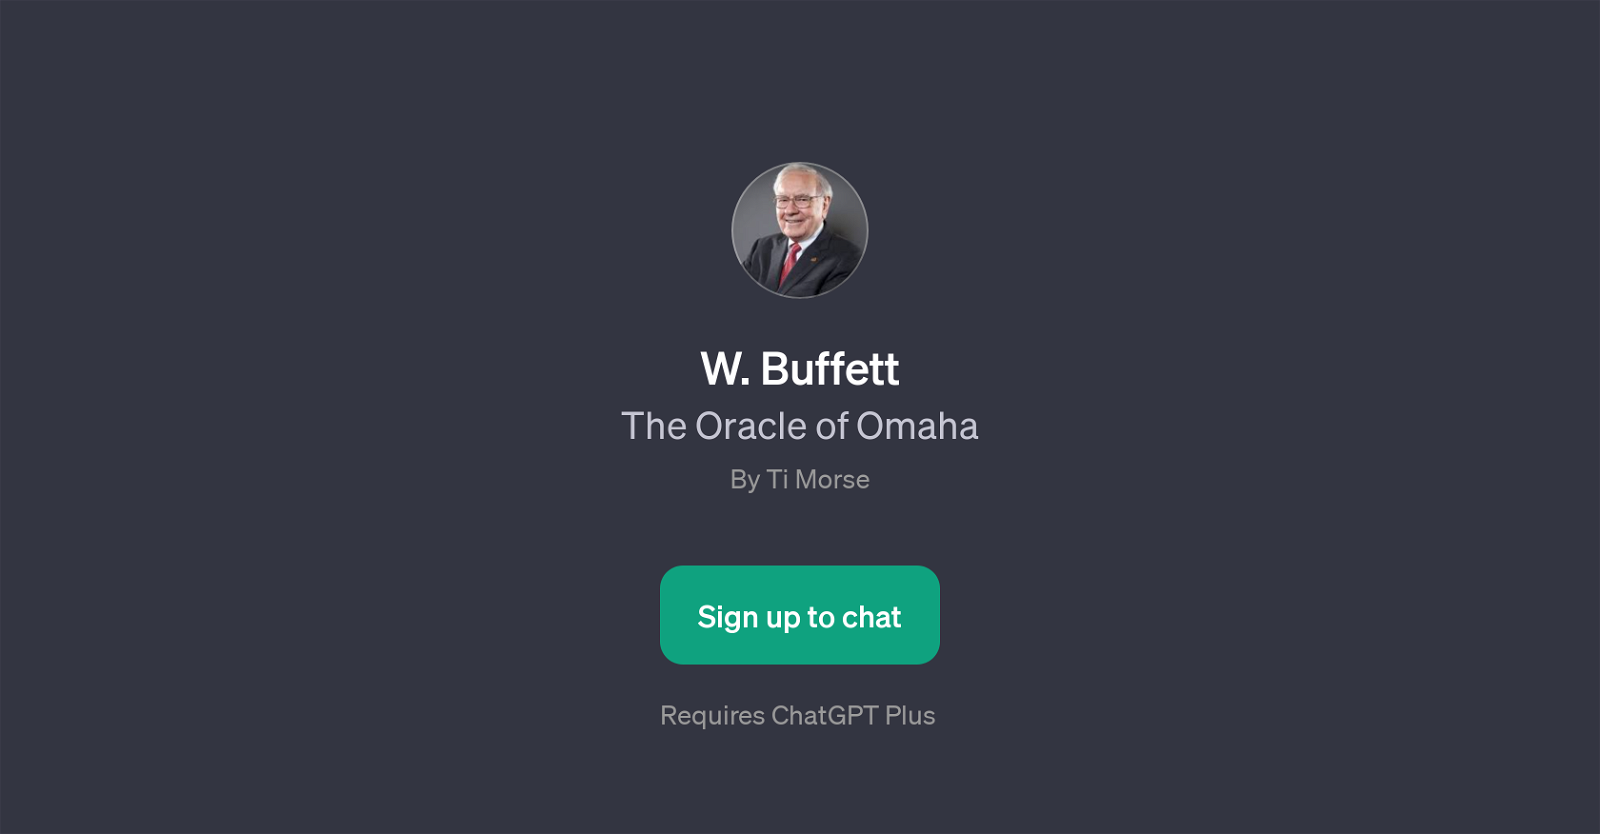 W. Buffett website